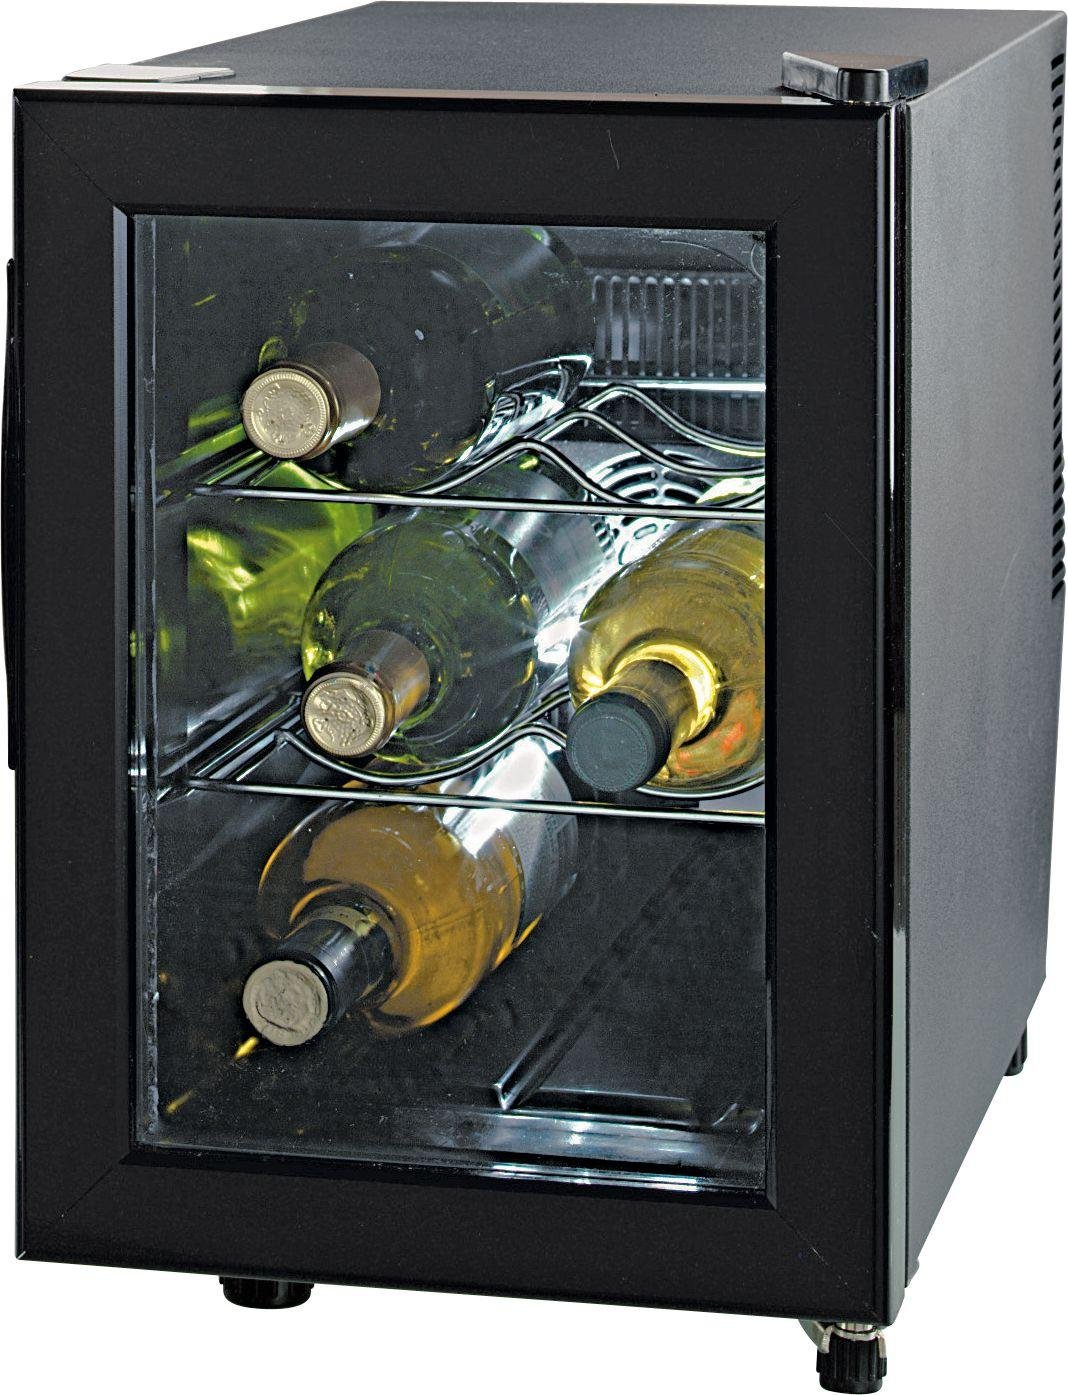 Image of 18 Litre Wine Cooler.